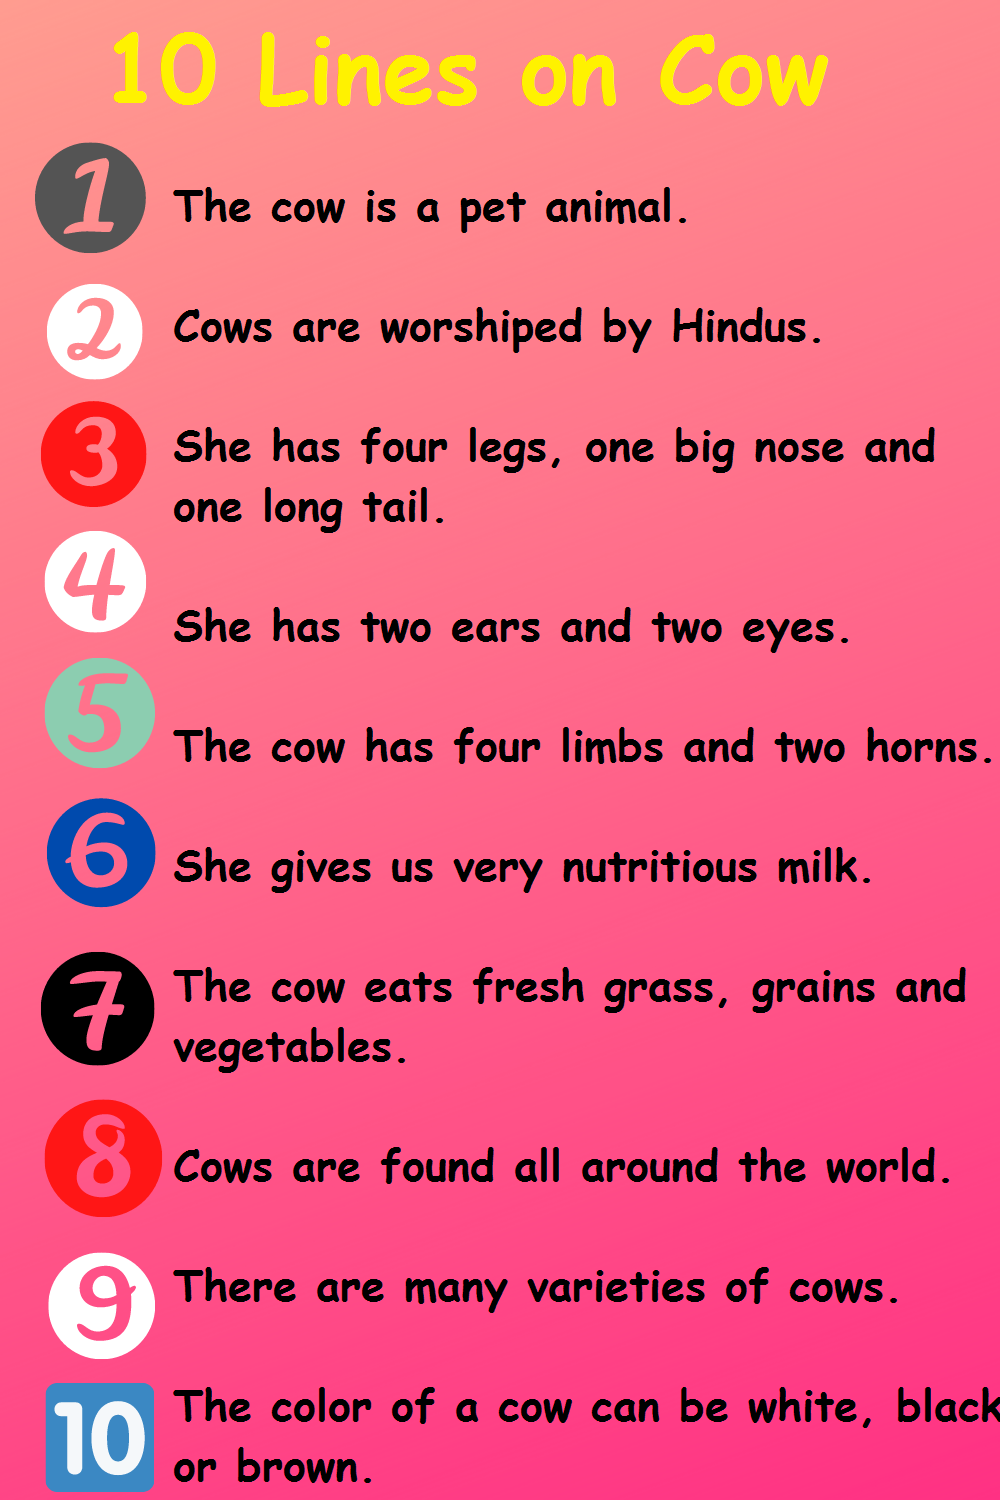 cow par essay in english 10 lines